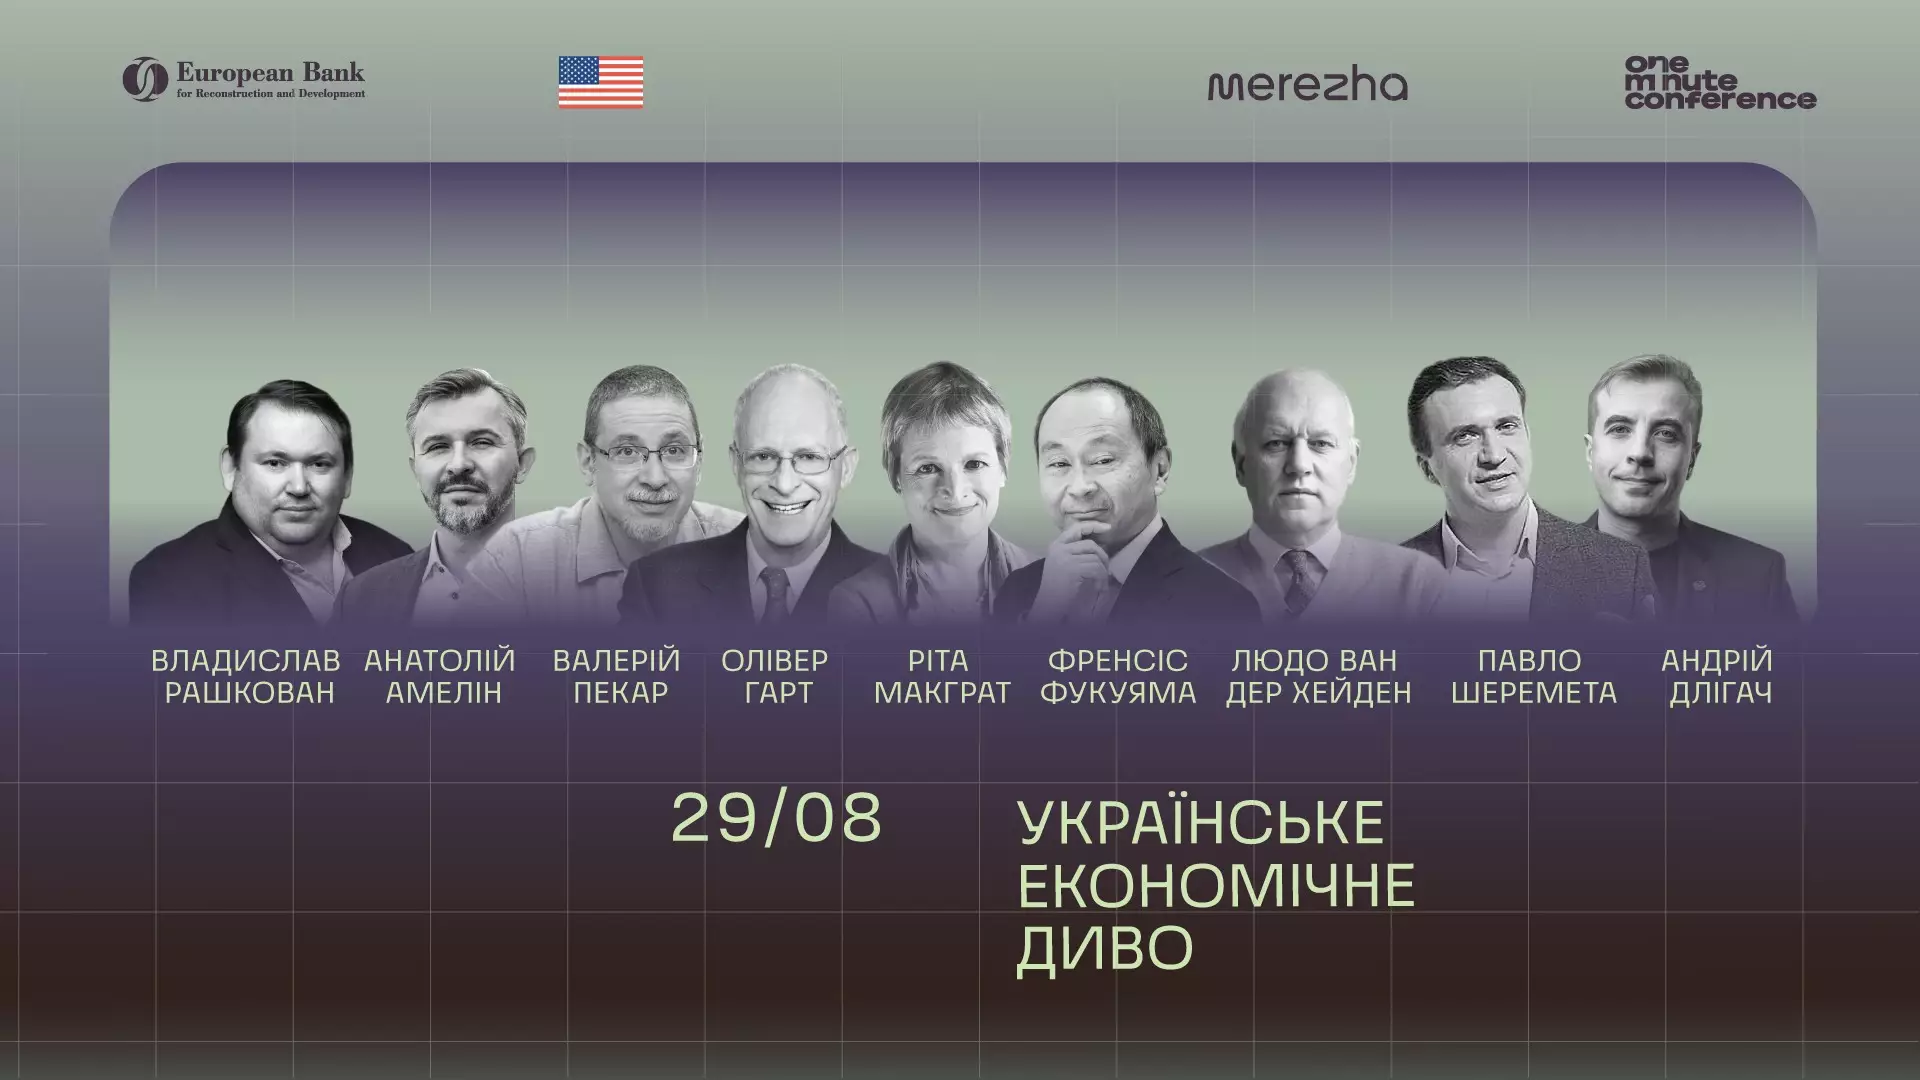 OneMinuteConference-2022: Провідні експерти за 9 хвилин розповіли, яким буде українське економічне диво